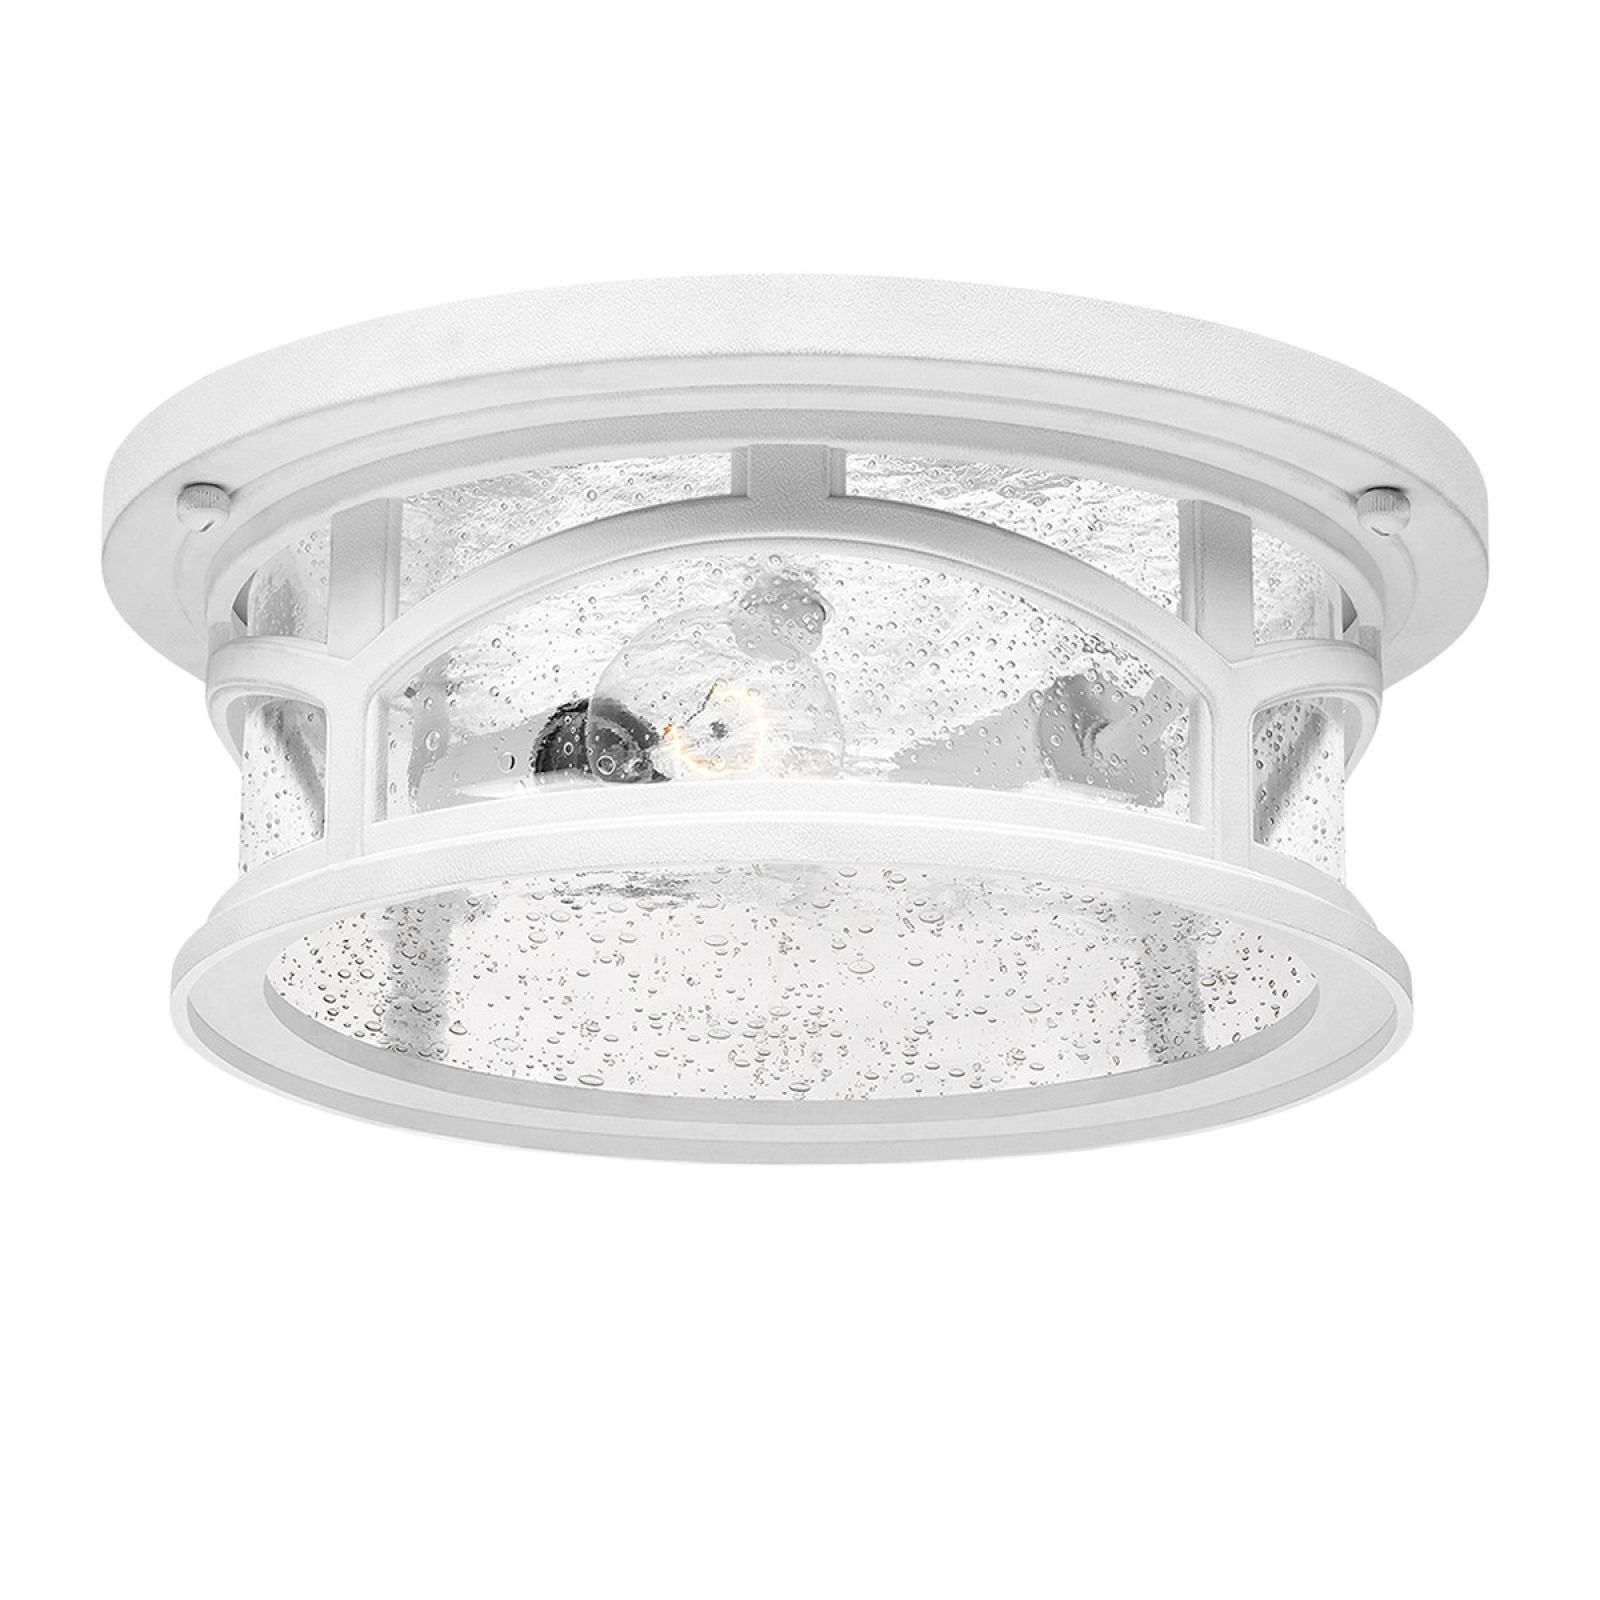 Marble Head exterior ceiling flush mount light in white